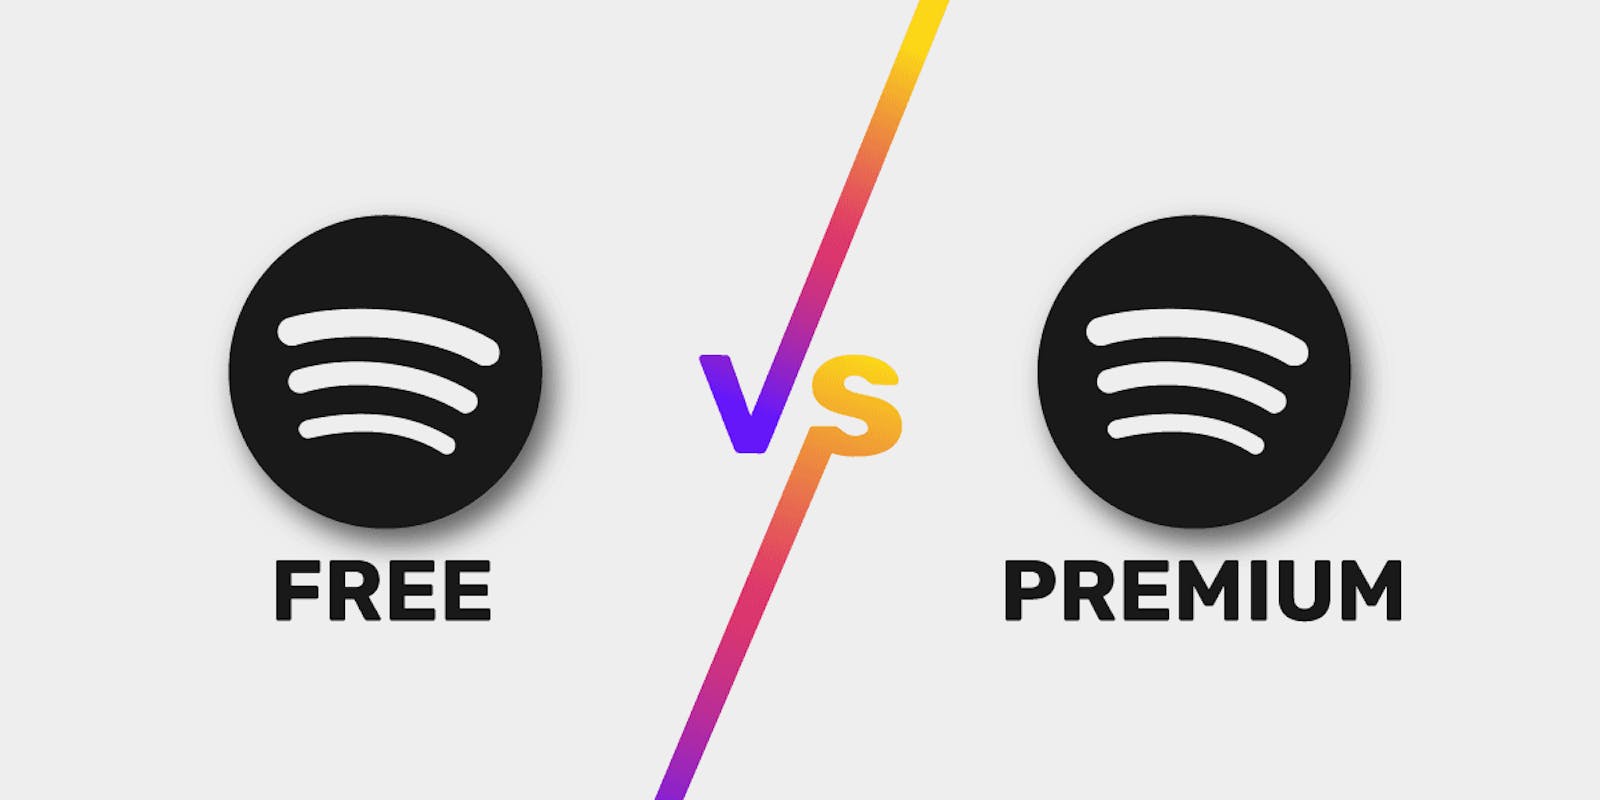 Spotify Premium: música sin conexión, ventajas y precios